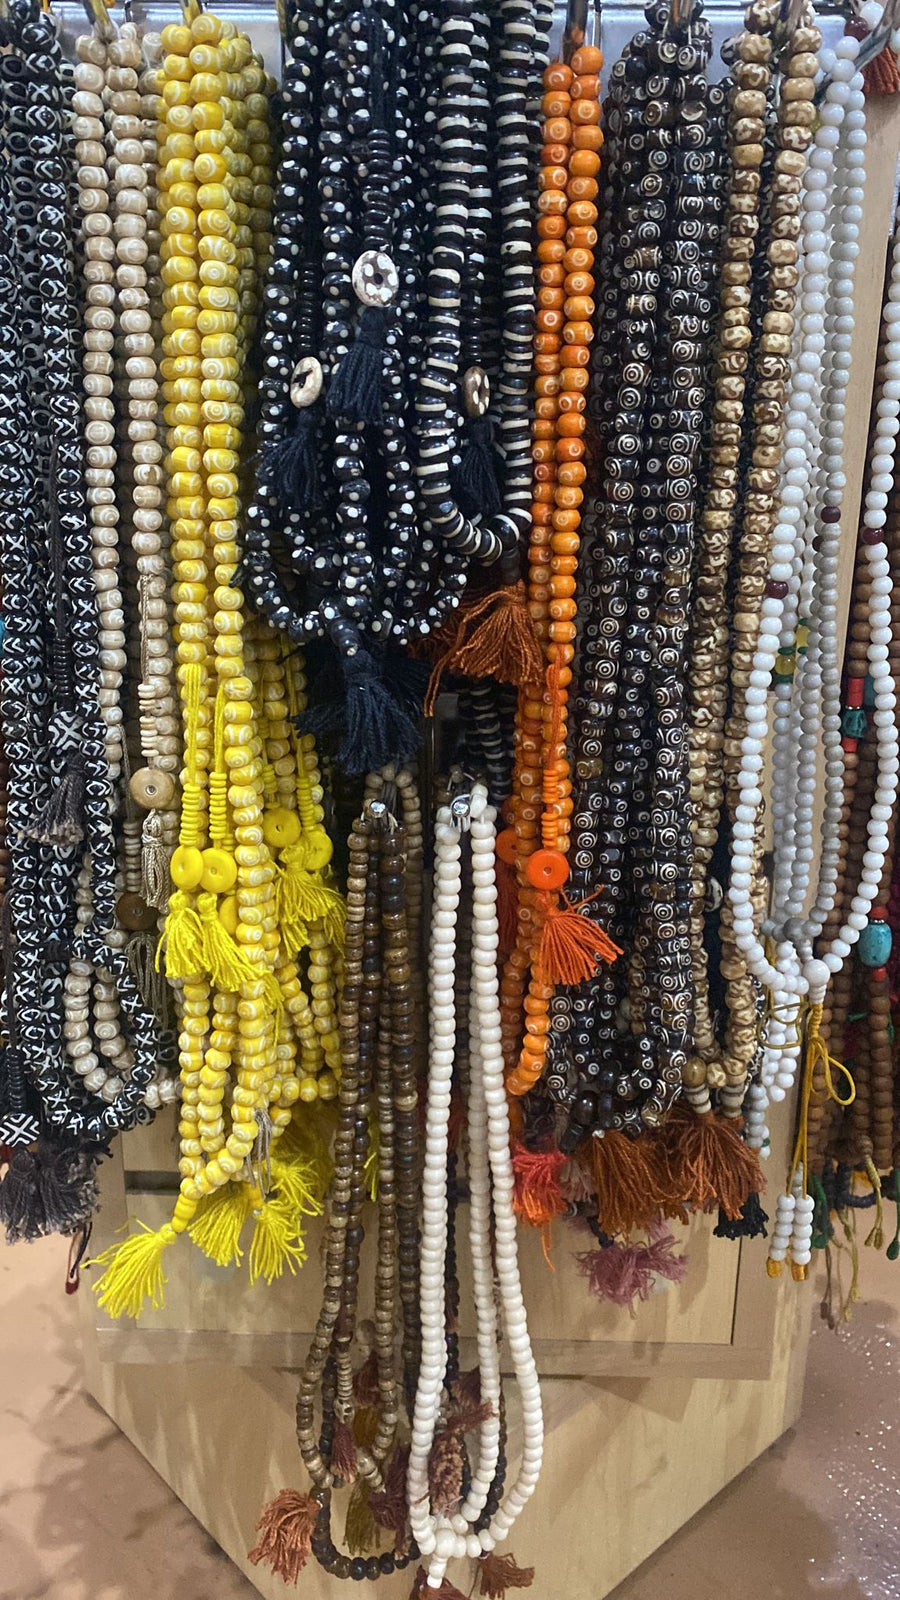 Wholesale Mala Necklaces for sale